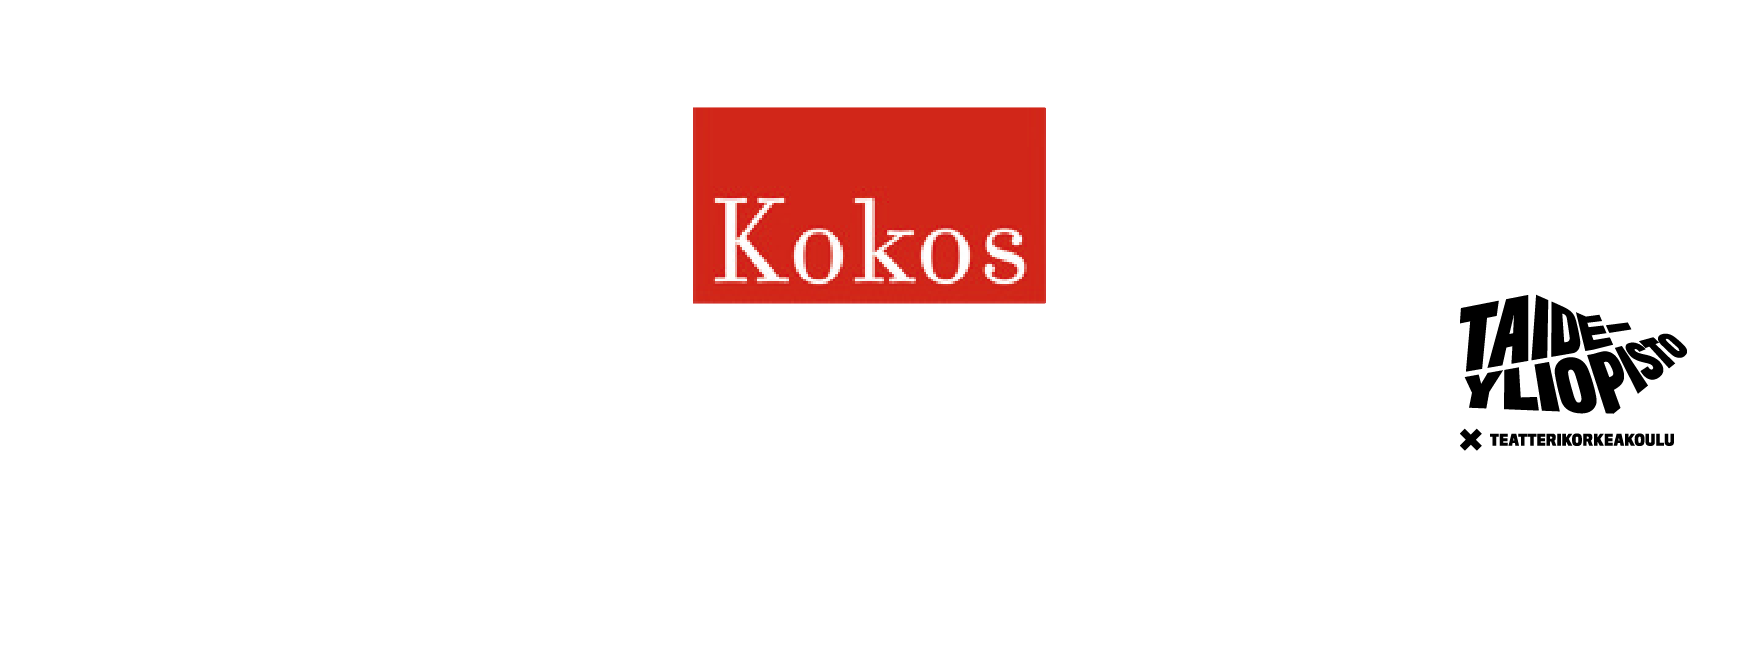 Kuvassa Kokos logo